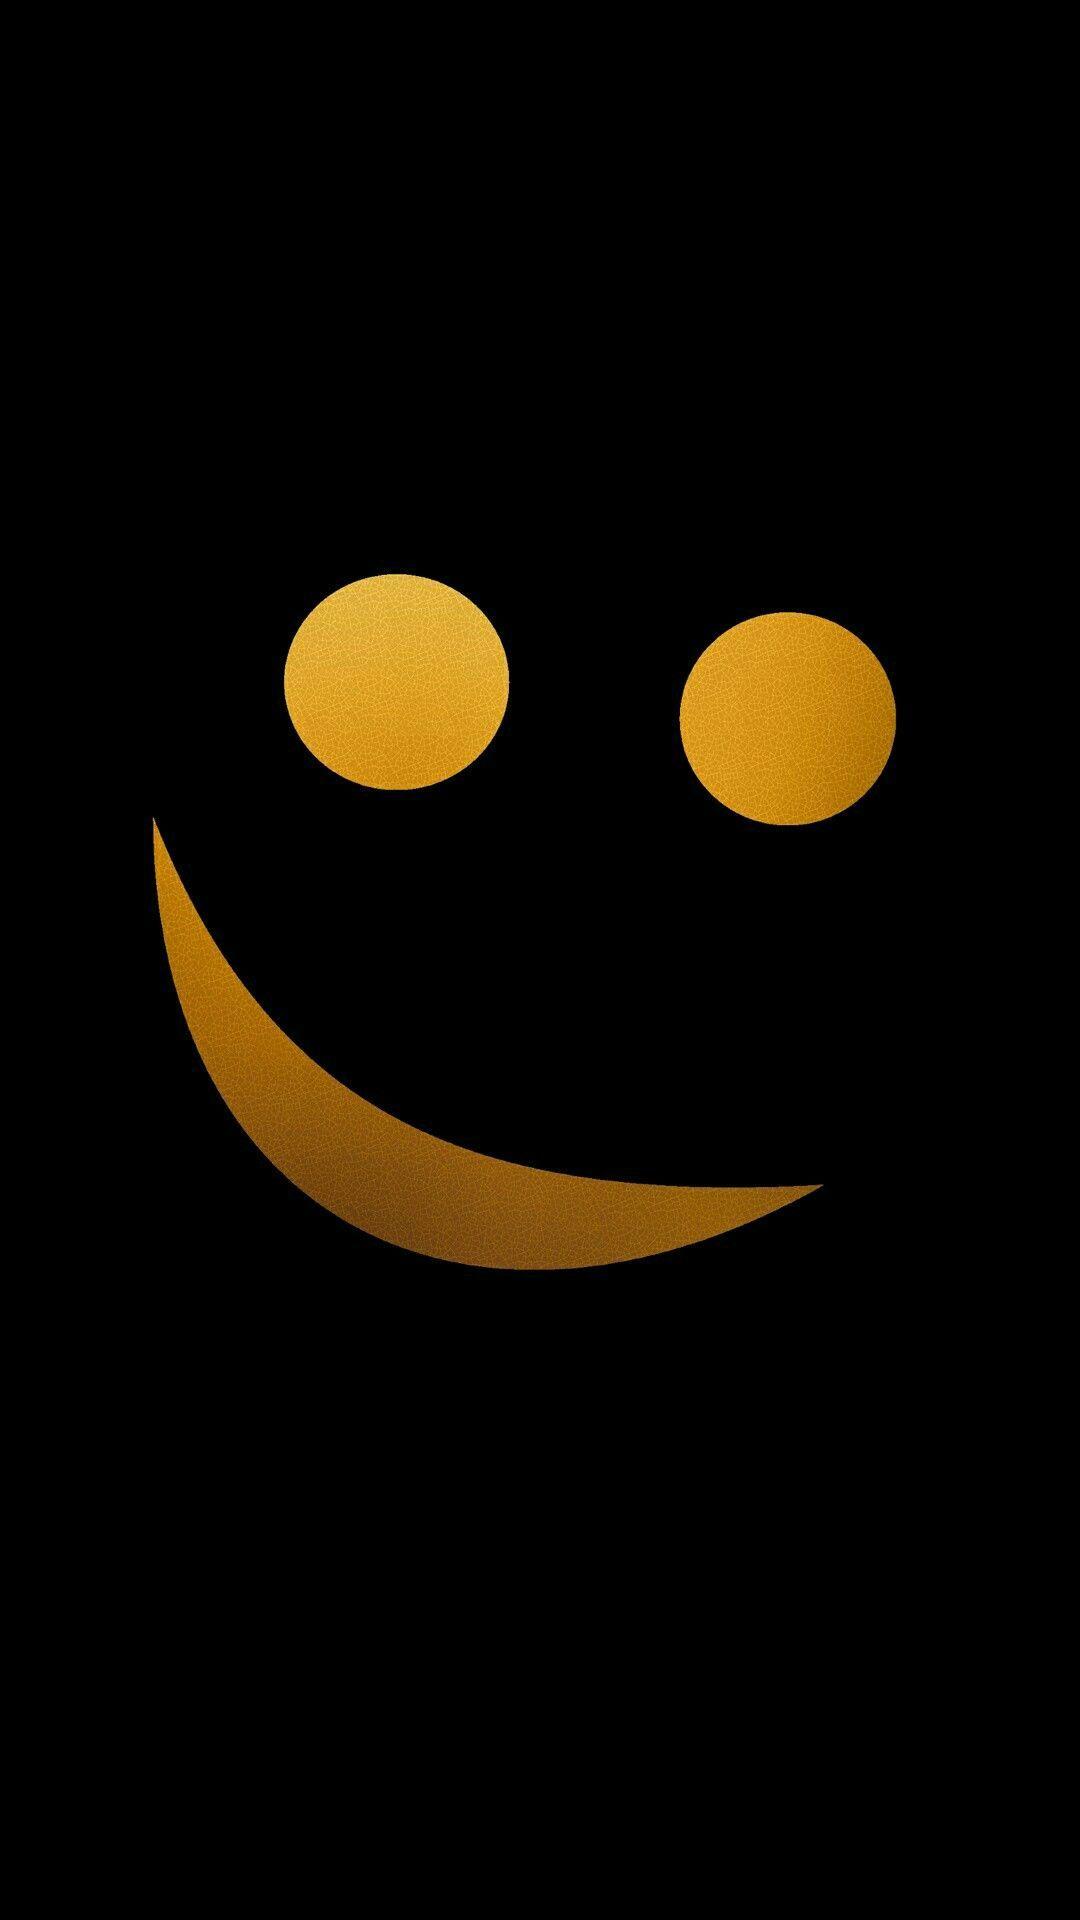 Swag Emoji Wallpapers - một lựa chọn tuyệt vời cho những ai yêu thích phong cách swag! Bạn sẽ nhìn thấy những biểu tượng Emoji gắn liền với những đường nét vàng, xanh và đỏ. Đây sẽ là hình nền điện thoại hoàn hảo để bổ sung cho phong cách của bạn. Hãy tìm kiếm các hình nền Swag Emoji để thể hiện phong cách của riêng bạn!